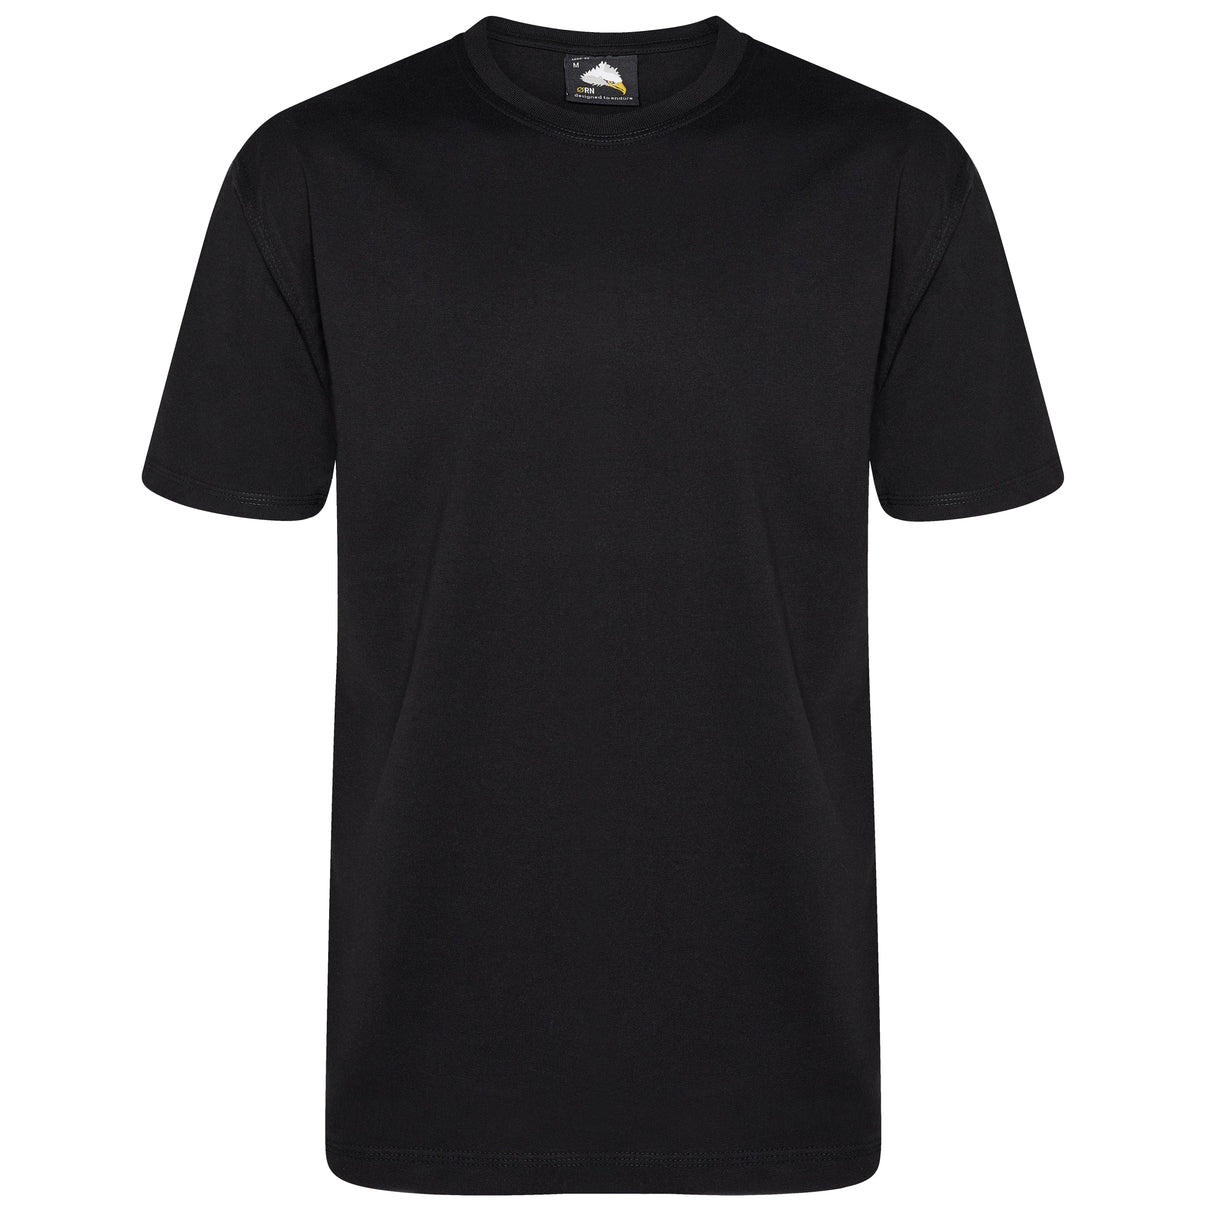 Orn Clothing Goshawk T-Shirt